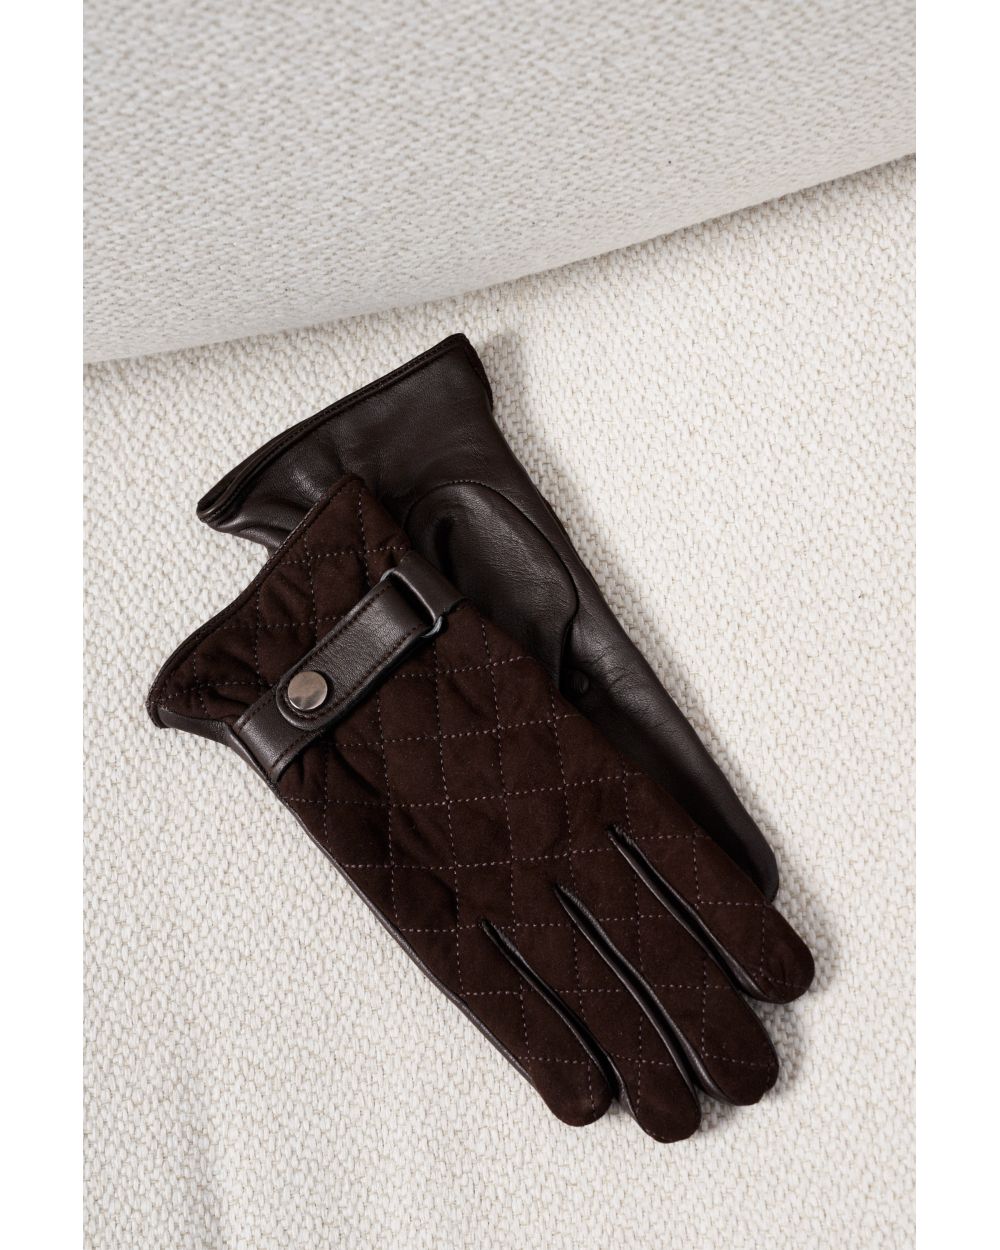 Перчатки мужские кожаные-замшевые, коричневые, стеганые с застежкой 